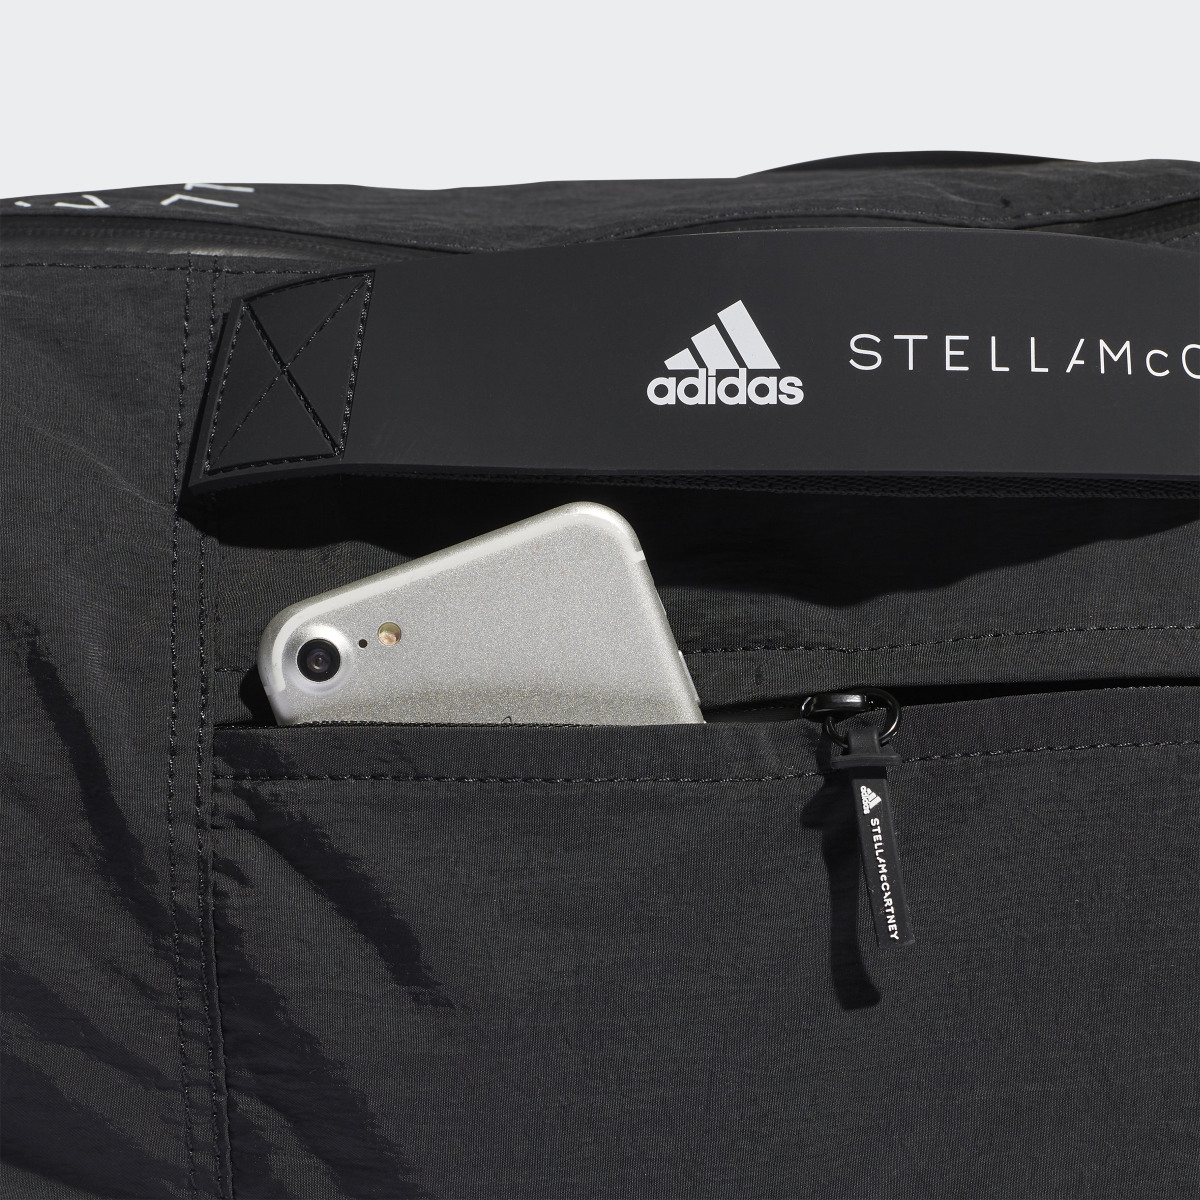 Adidas by Stella McCartney Studio Bag. 5